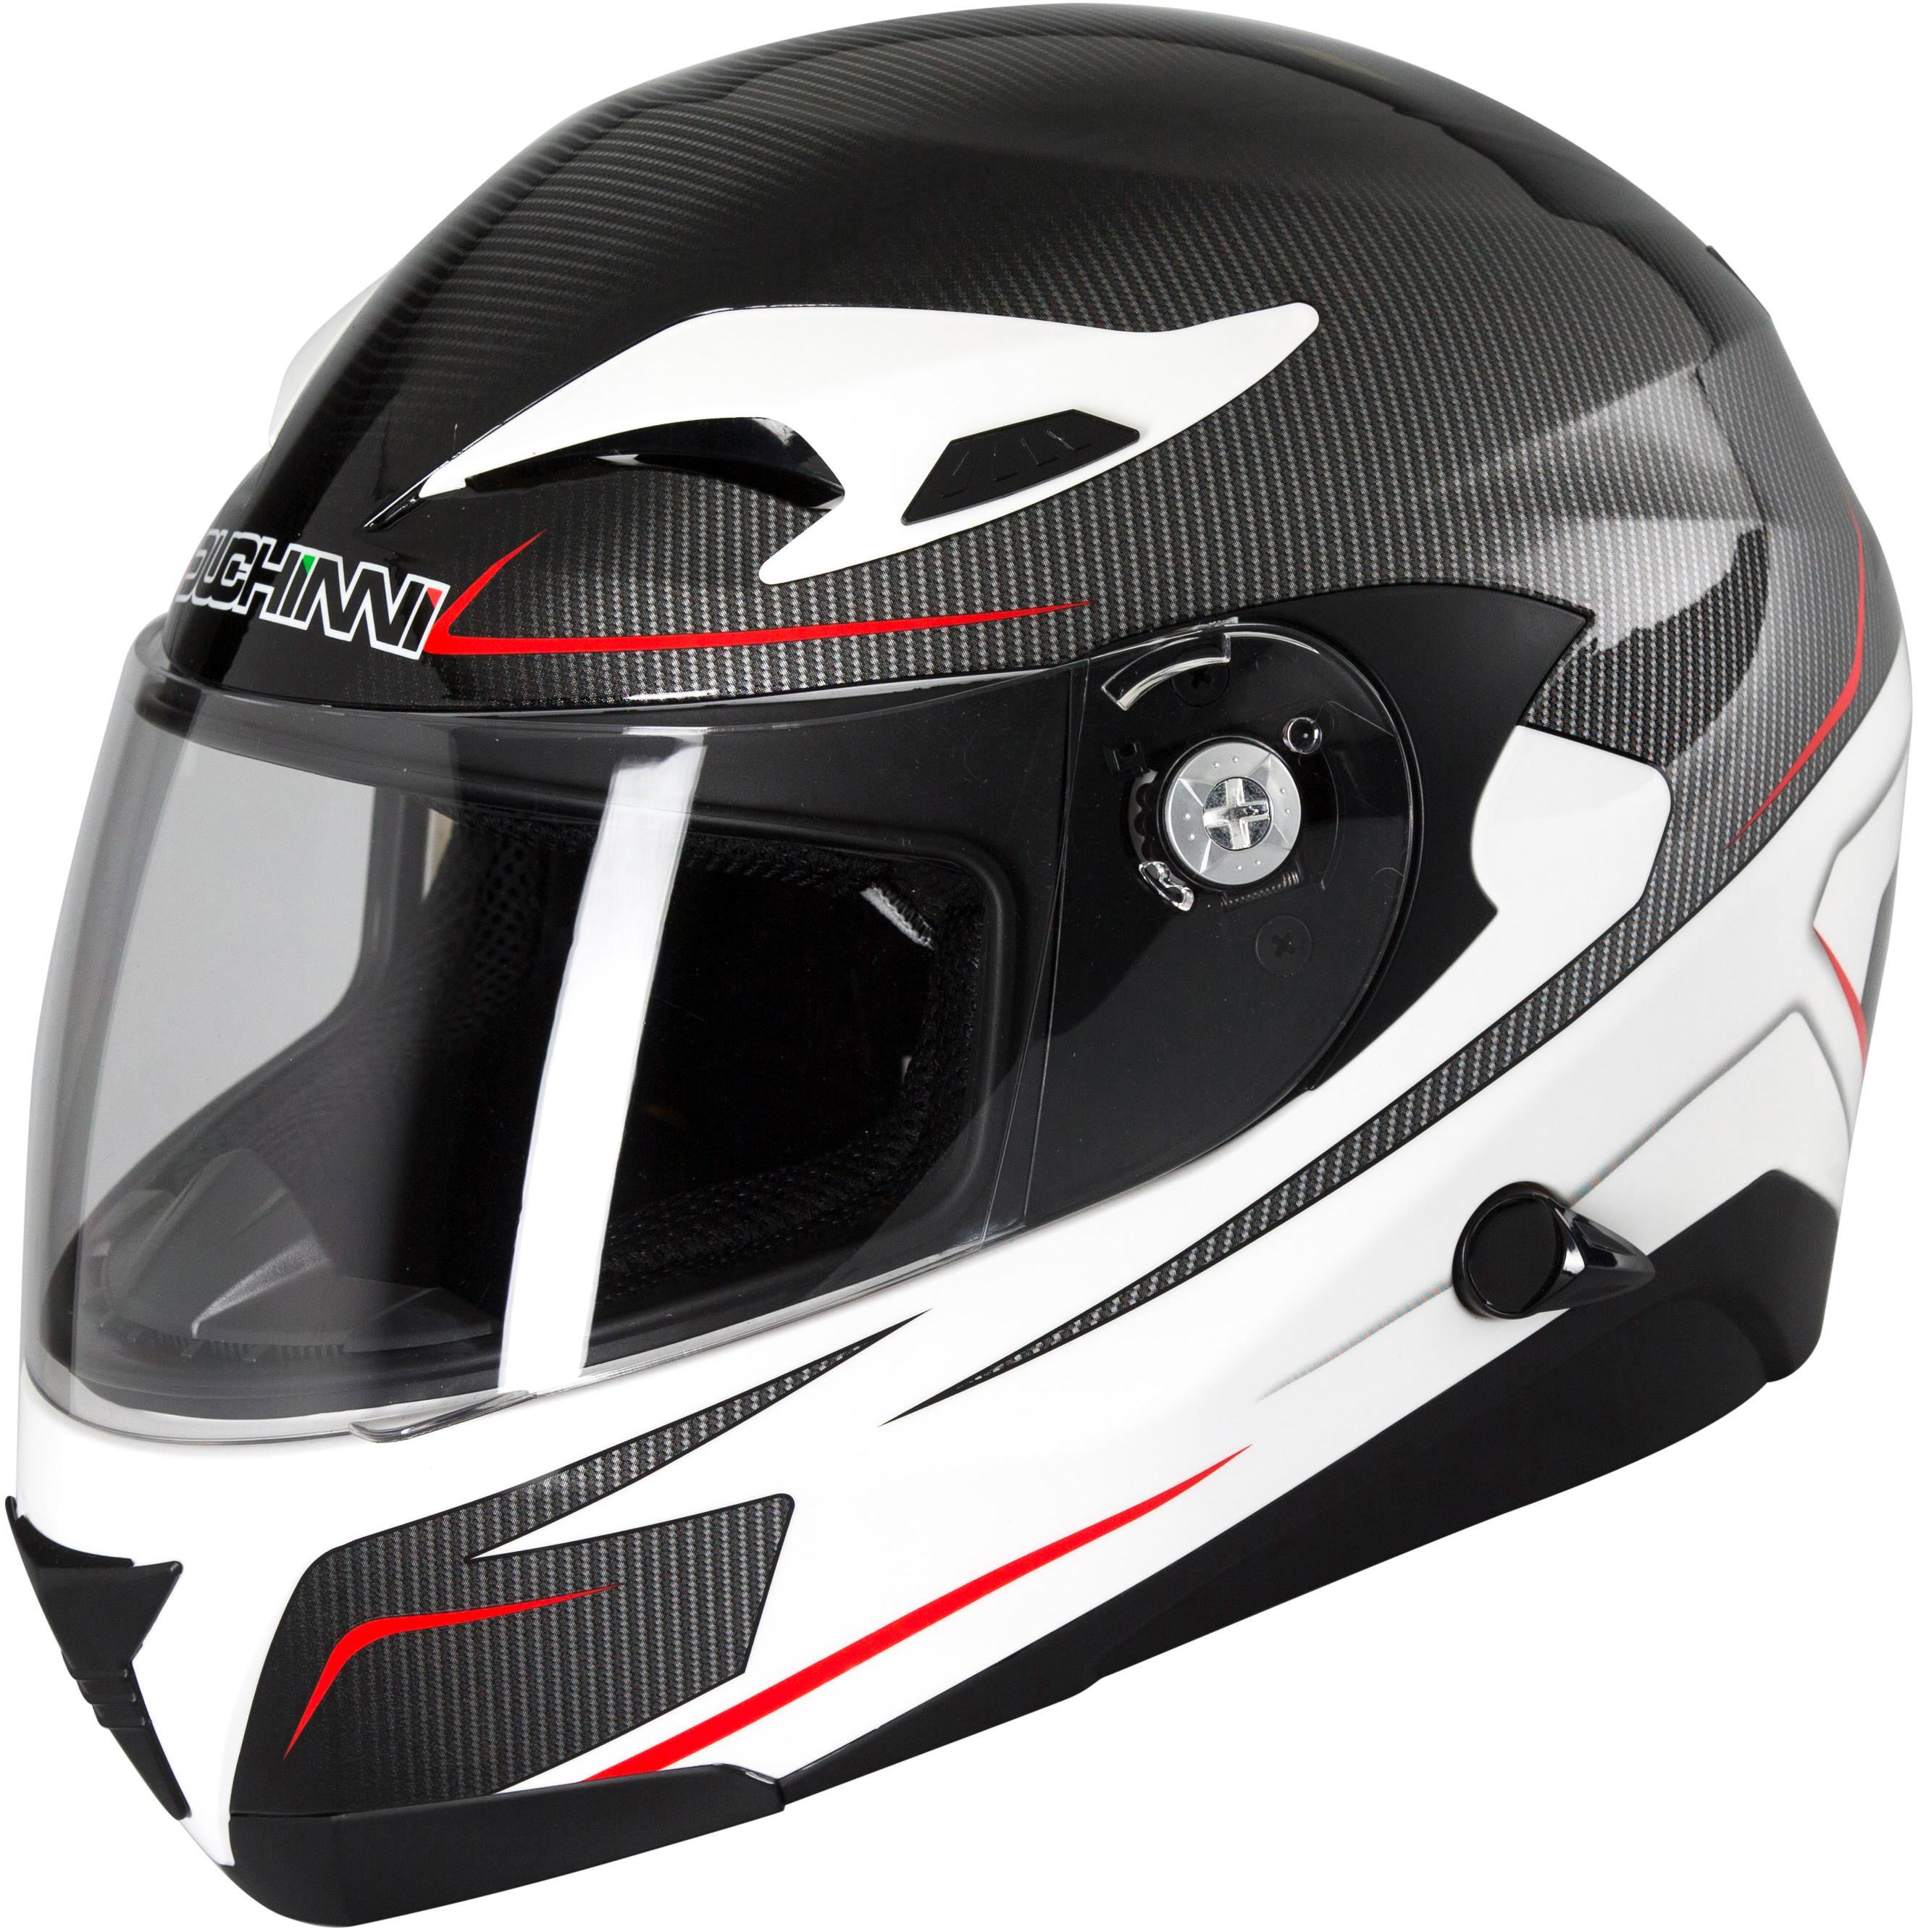 Duchinni Colt D405 Full Face Helmet Black/White - Xl